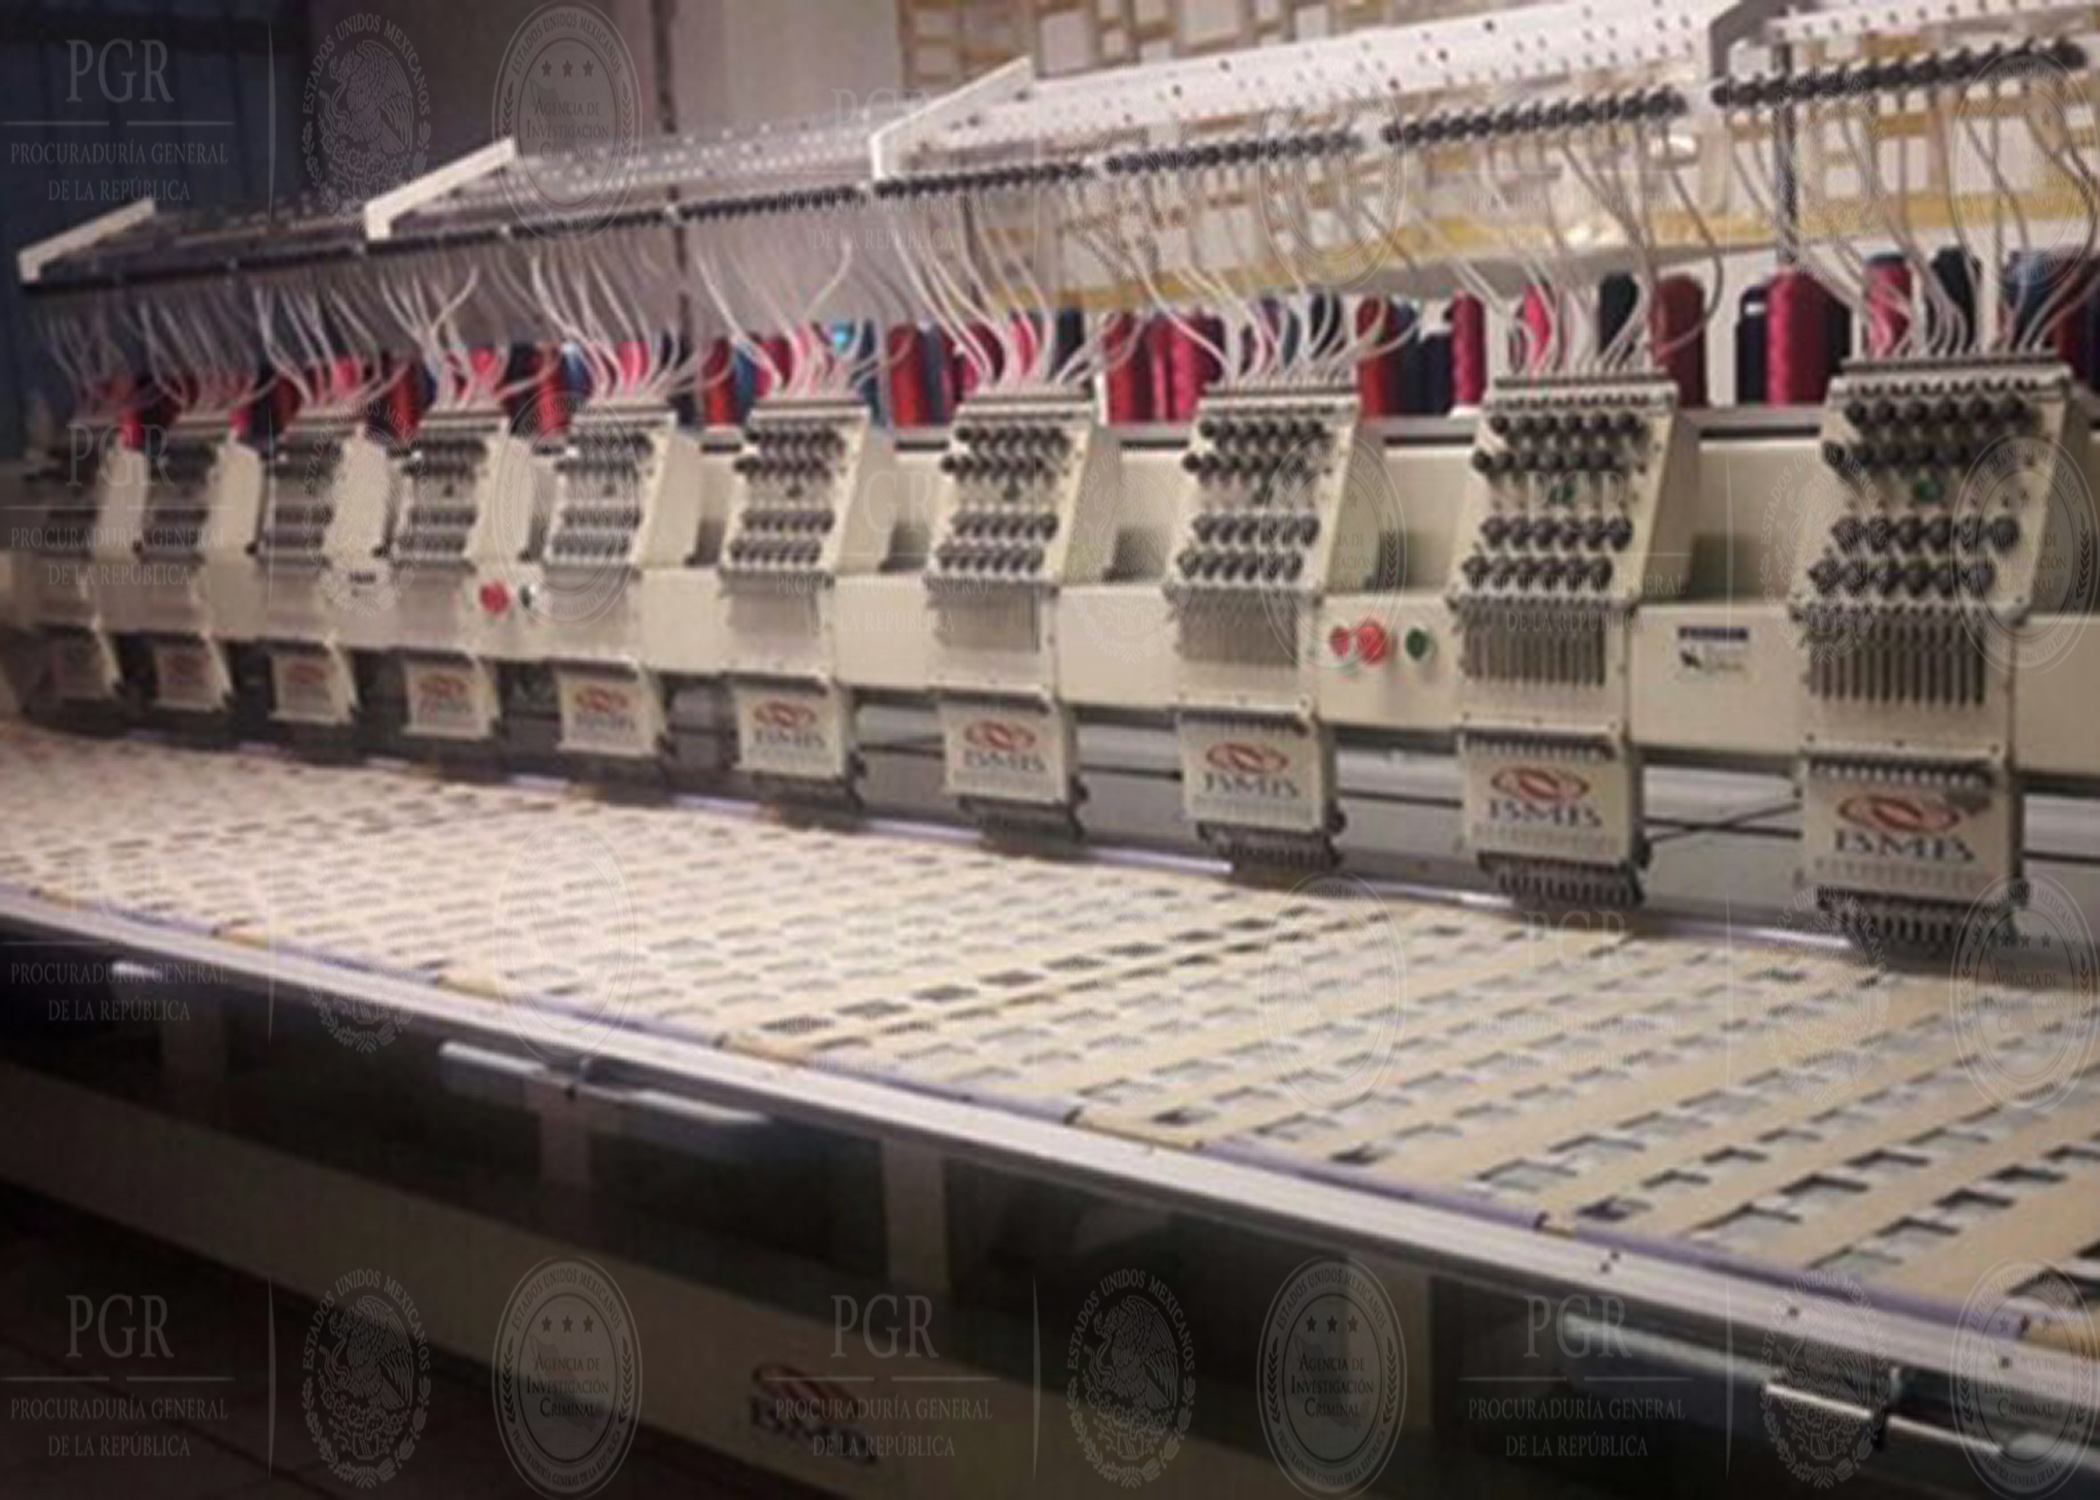 Asegura PGR calzado que ostenta falsificación de marca en Guanajuato